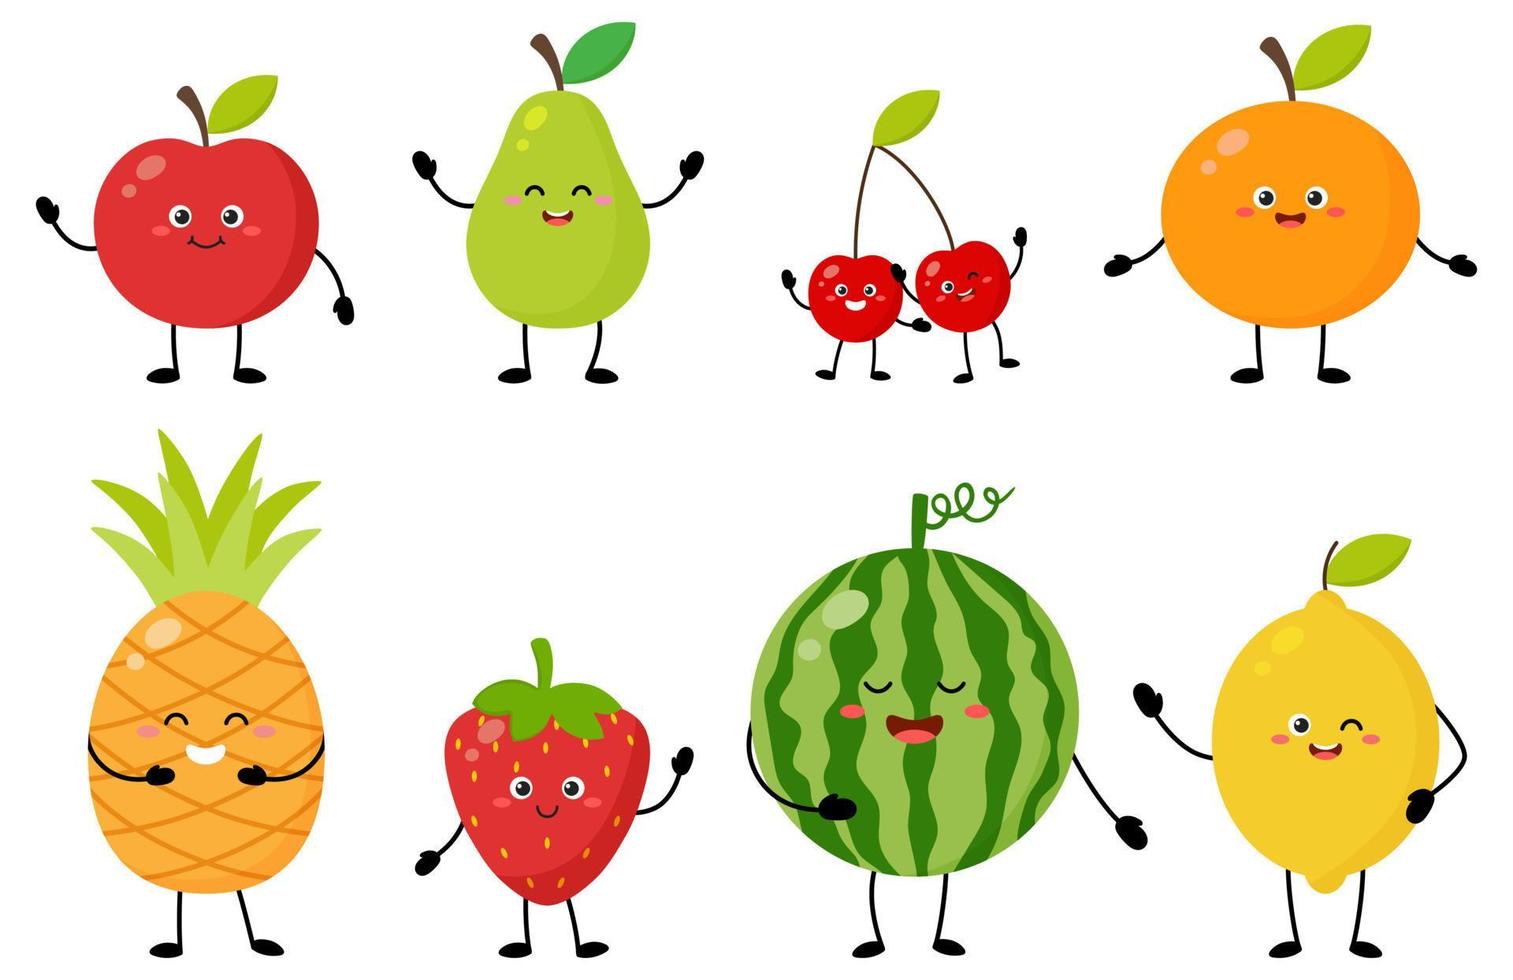 karikatursatz fröhlicher süßer fruchtfiguren mit unterschiedlichen posen und emotionen. süßer apfel, birne, kirsche, orange, ananas, erdbeere, wassermelone, zitrone für kindervektorlebensmittelillustration vektor